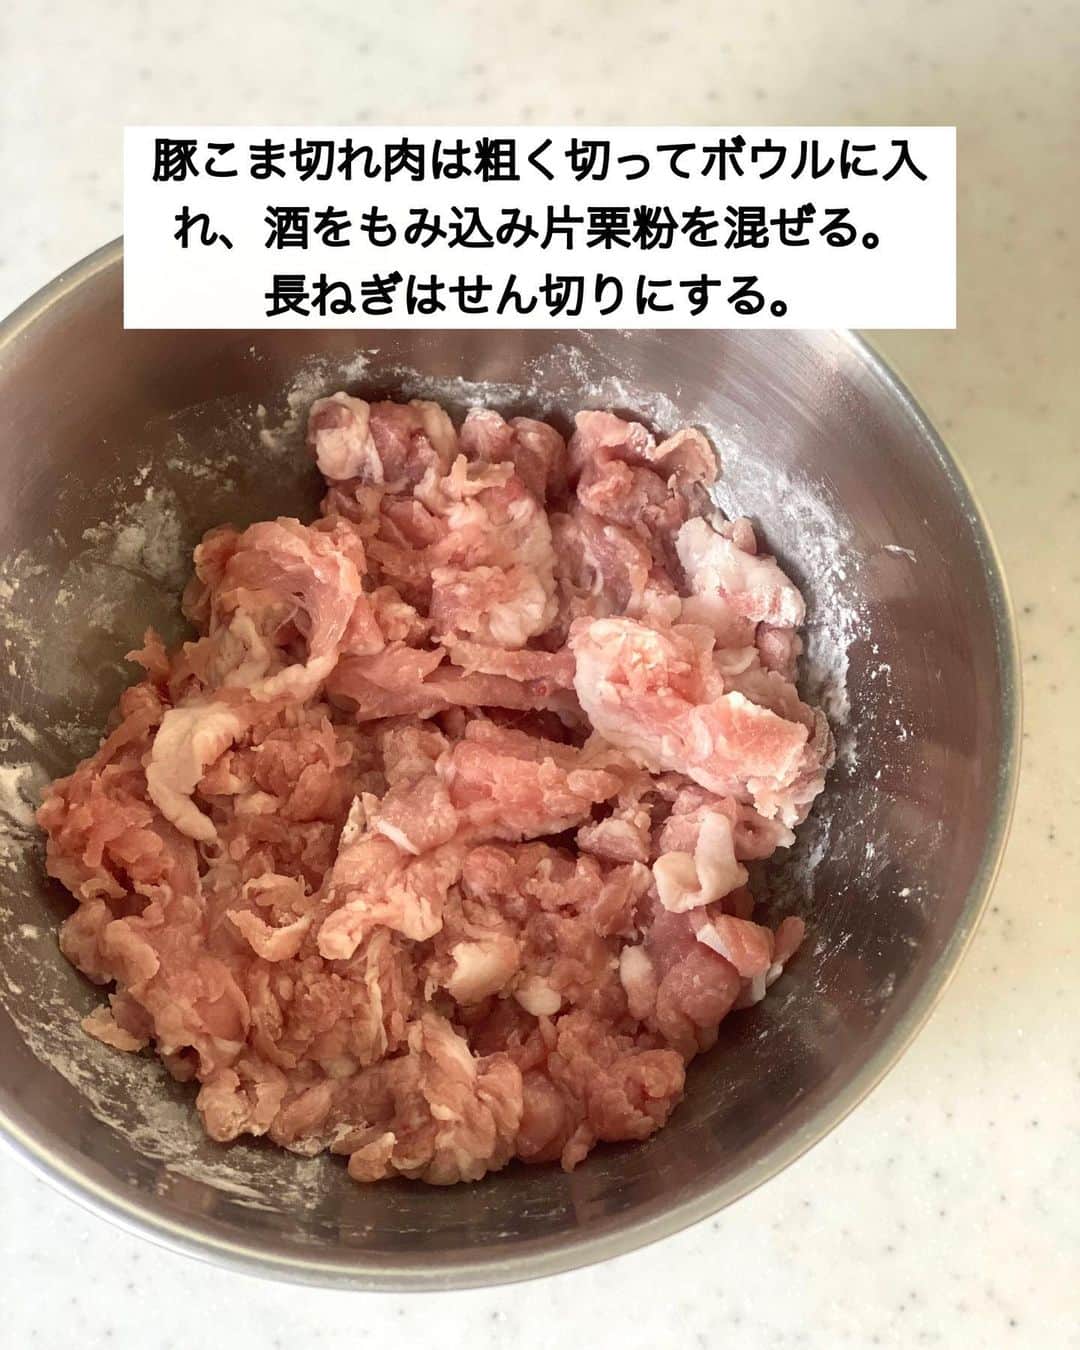 ちおりさんのインスタグラム写真 - (ちおりInstagram)「【フライパンで簡単！】 ⁡ レシピ色々は→ @chiori.m.m をチェック✅ ⁡ ⁡ ━︎━︎━︎━︎━︎━︎━︎━︎━︎━︎━︎ 豚こまチャーシュー ⁡ Nadiaレシピ🆔458176 ━︎━︎━︎━︎━︎━︎━︎━︎━︎━︎━︎ ⁡ ⁡ こんばんは(^ ^) 今日は、節約の味方 豚こまで作った簡単おかずです。 ⁡ 豚肉を丸めて焼き 甘辛いタレにからめるだけでOK👌🏻 煮込まず手軽に チャーシュー味の肉おかずが作れます。 ⁡ 冷めたものをレンジで加熱しても ジューシーで美味しいので 作り置きにもおススメです😊 ⁡ ⁡ なるべく薄く広げて焼くのがコツ。 下味不要でも中まで味が染み込み 火の通りも良いです。 POINTもぜひご覧ください☺️ ⁡ ⁡ ━︎━︎━︎━︎━︎━︎━︎━︎━︎━︎━︎━︎━︎━︎━︎━︎━︎━︎━︎━︎ ⁡ ✍︎ ✍︎recipe ✍︎ ✍︎ ⁡ ⁡ 👩‍🌾【材料】2人分 •豚こま切れ肉……250g •長ねぎ……5㎝分 •酒……大さじ1 •片栗粉……大さじ1と1/2 •ごま油……小さじ2 A砂糖、酒、しょうゆ……各大さじ1と1/2 A酢、オイスターソース……各小さじ1 Aおろし生姜、にんにくチューブ……各小さじ1/2 •好みでゆで卵……1〜2個 ⁡ ⁡ ⁡ ⁡ 👩‍🍳【作り方】 ①豚こま切れ肉は粗く切ってボウルに入れ、酒をもみ込み片栗粉を混ぜる。長ねぎはせん切りにする。 ⁡ ②6等分にし、丸めてから平らにつぶして形を整える。7㎝ほどに薄く広げてください。 ⁡ ③フライパンにごま油を中火で熱し、豚肉を入れて両面焼き色がつくまで約2分ずつ焼いたら蓋をし、弱火でさらに3分ほど焼き取り出す。 ⁡ ④余分な油を拭き取り【A】を加えて弱火で煮る。煮立ってタレにとろみがついてきたら肉を戻し煮からめる。 ⁡ ⑤器に長ねぎ、好みでゆで卵と盛り合わせ、フライパンに残ったタレをかける。ねぎと一緒にお召し上がりください。 ⁡ ⁡ ⁡ ⁡ 📝【POINT】 •豚肉は切り落とし肉でもOKです。 ⁡ •甘口です。甘さ控えめがお好みでしたら 砂糖の量を調整してください。 ⁡ •お弁当OK🍱 お弁当用に作る場合は8等分の大きさでもいいと思います。 ⁡ •作り置きの日持ちは2〜3日（冷蔵） 冷凍OK（日持ちは約3週間） ⁡ ⁡ ⁡ ︎≡︎≡︎≡︎≡︎≡︎≡︎≡︎≡︎≡︎≡︎≡︎≡︎≡︎≡︎≡︎≡︎≡︎≡︎≡︎≡︎≡︎≡︎≡︎≡︎≡︎≡︎≡︎≡︎≡︎≡︎≡︎≡︎≡︎ 【✅新刊レシピ本のお知らせ】 📕ちおり流くり返し作りたいおかず 🙇🏻‍♀️おかげ様で書籍累計10万部を突破しました。 ⁡ ⁡ 全国の書店、Amazon、楽天ブックス 宝島チャンネルにて発売中です。 ⁡ ➤ ➤ ➤ @chiori.m.m のストーリーハイライト。 プロフィールのリンクからご覧いただけます😊 📗ちおりの簡単絶品おかず１、２ 既刊もぜひご覧いただきたいです。 ⁡ ≡︎≡︎≡︎≡︎≡︎≡︎≡︎≡︎≡︎≡︎≡︎≡︎≡︎≡︎≡︎≡︎≡︎≡︎≡︎≡︎≡︎≡︎≡︎≡︎≡︎≡︎≡︎≡︎≡︎≡︎≡︎≡︎≡︎≡︎ ⁡ ⁡ 最後までご覧いただきありがとうございます😊 皆さんのいいね、コメント、レシピ保存が 日々の励みになっています^ ^ ⁑ ⁑ ⁑ ⁑ ⁑ ⁑ ⁑ ⁑ ⁑ #豚こま #豚こまレシピ   #Nadiaレシピ #Nadiaartist  #japanesefood   #食卓 #献立 #簡単ごはん #おうちごはん　 #簡単レシピ #節約レシピ #時短レシピ  #日々の暮らし #作り置きレシピ   #夕飯レシピ #お弁当レシピ #基本のレシピ  #料理初心者  #おつまみレシピ #チャーシューレシピ #作り置き  #豚肉レシピ #料理レシピ #甘辛」4月5日 21時15分 - chiori.m.m